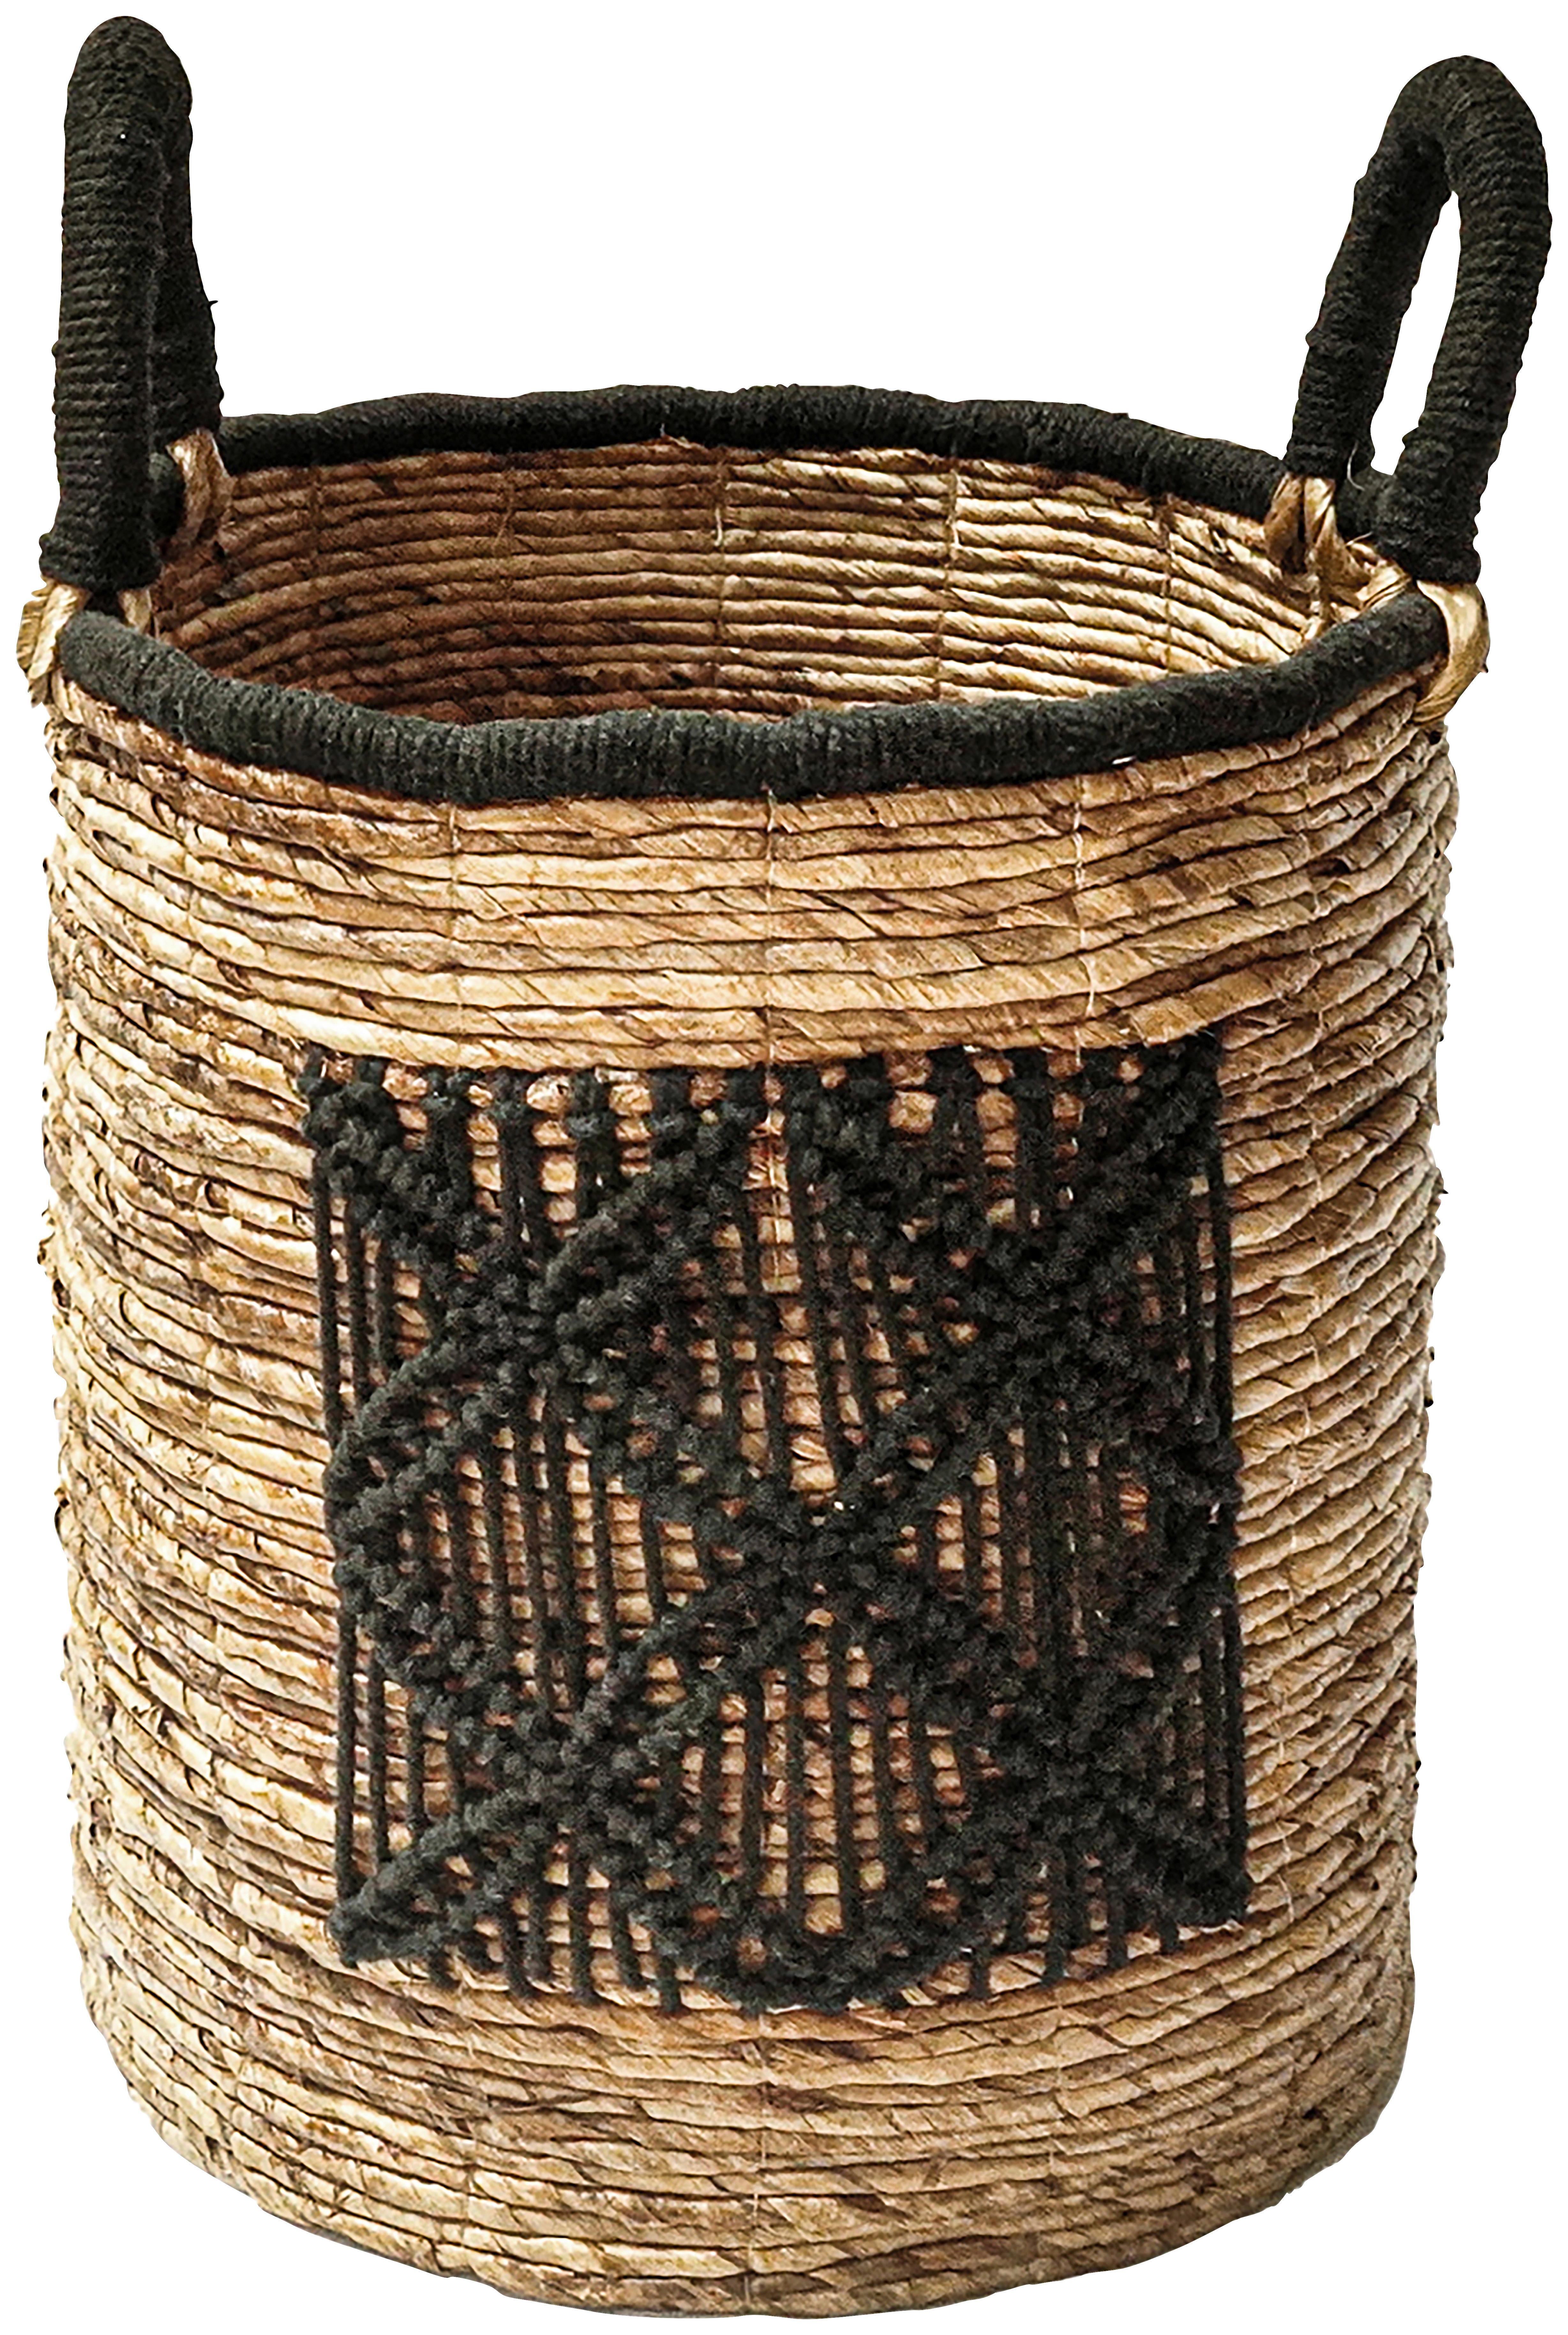 Kosár Yuna-L - Natúr/Fekete, modern, Természetes anyagok/Textil (41/45-55cm) - Premium Living